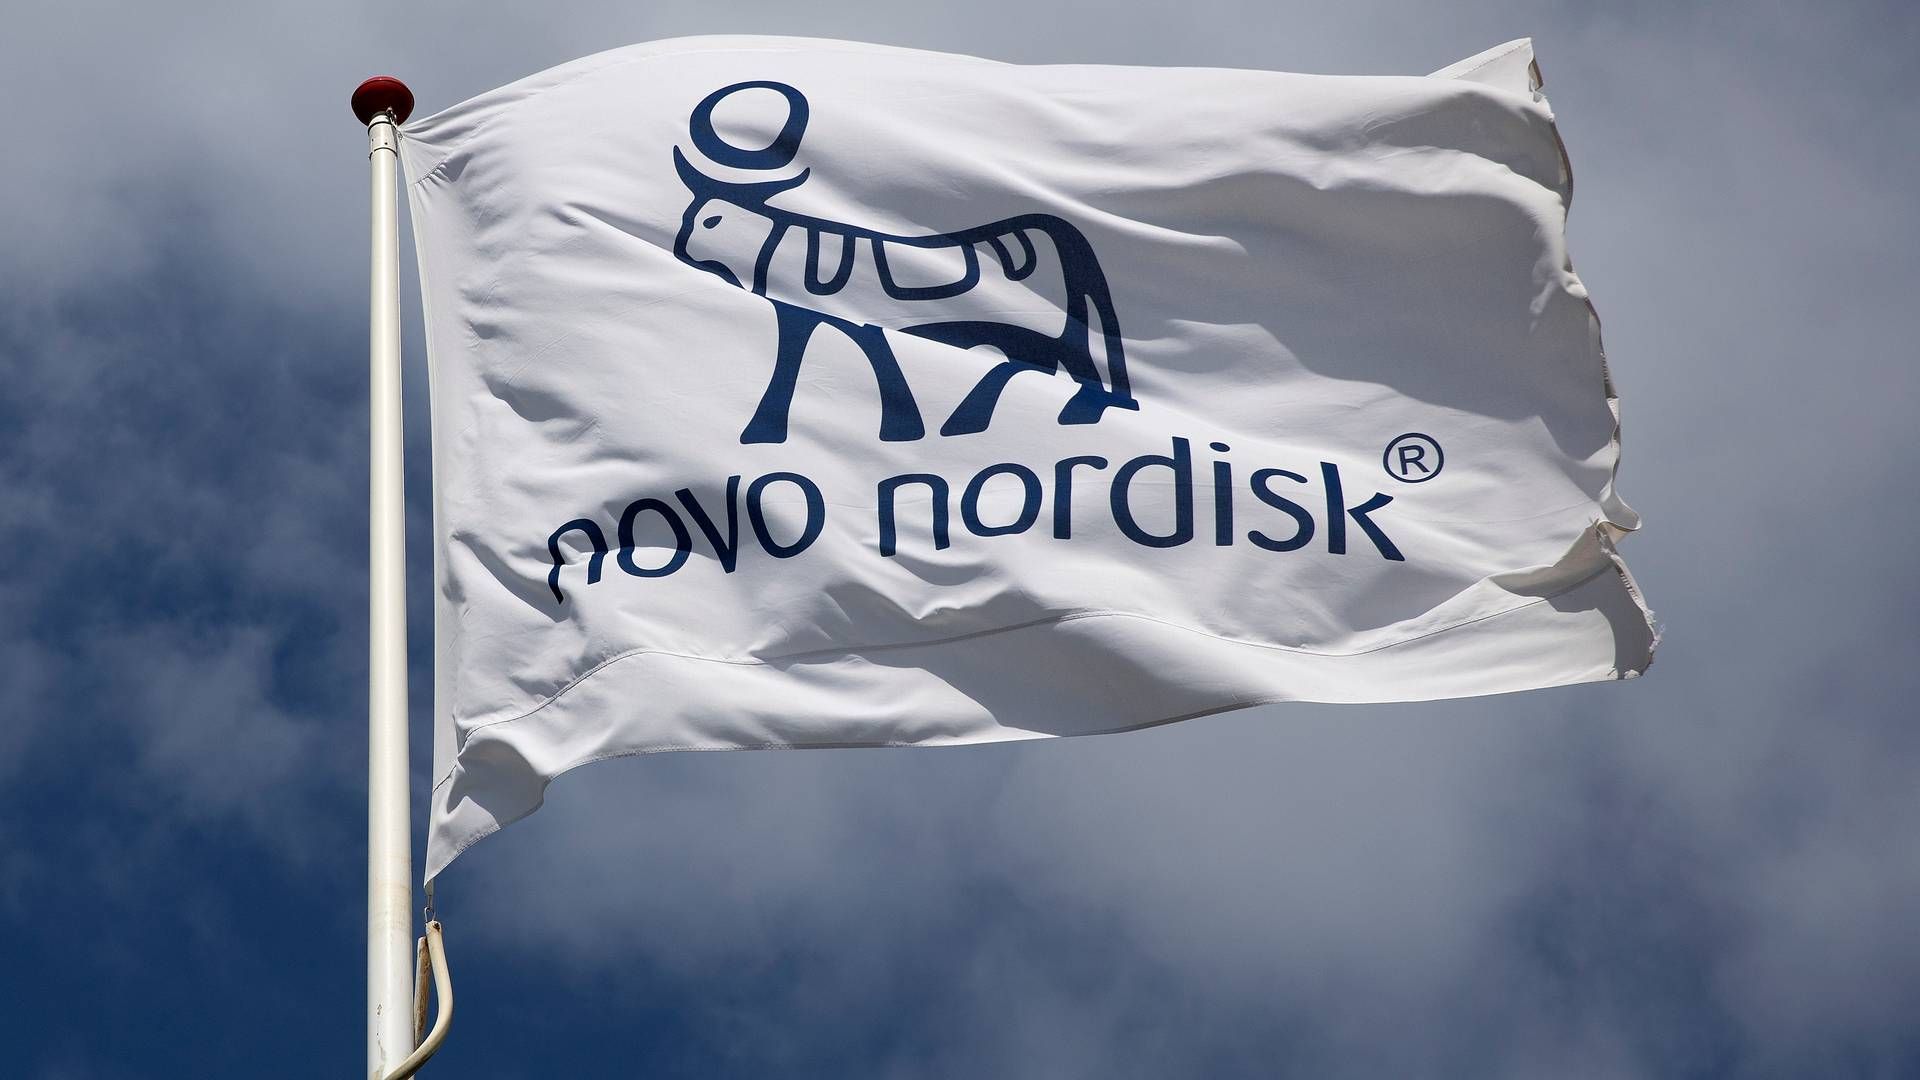 Mængden af håndplukkede tidligere topembedsmænd, der i dag er på Novo Nordisks lønningsliste, er ifølge en række kritikere for stor. | Foto: Finn Frandsen